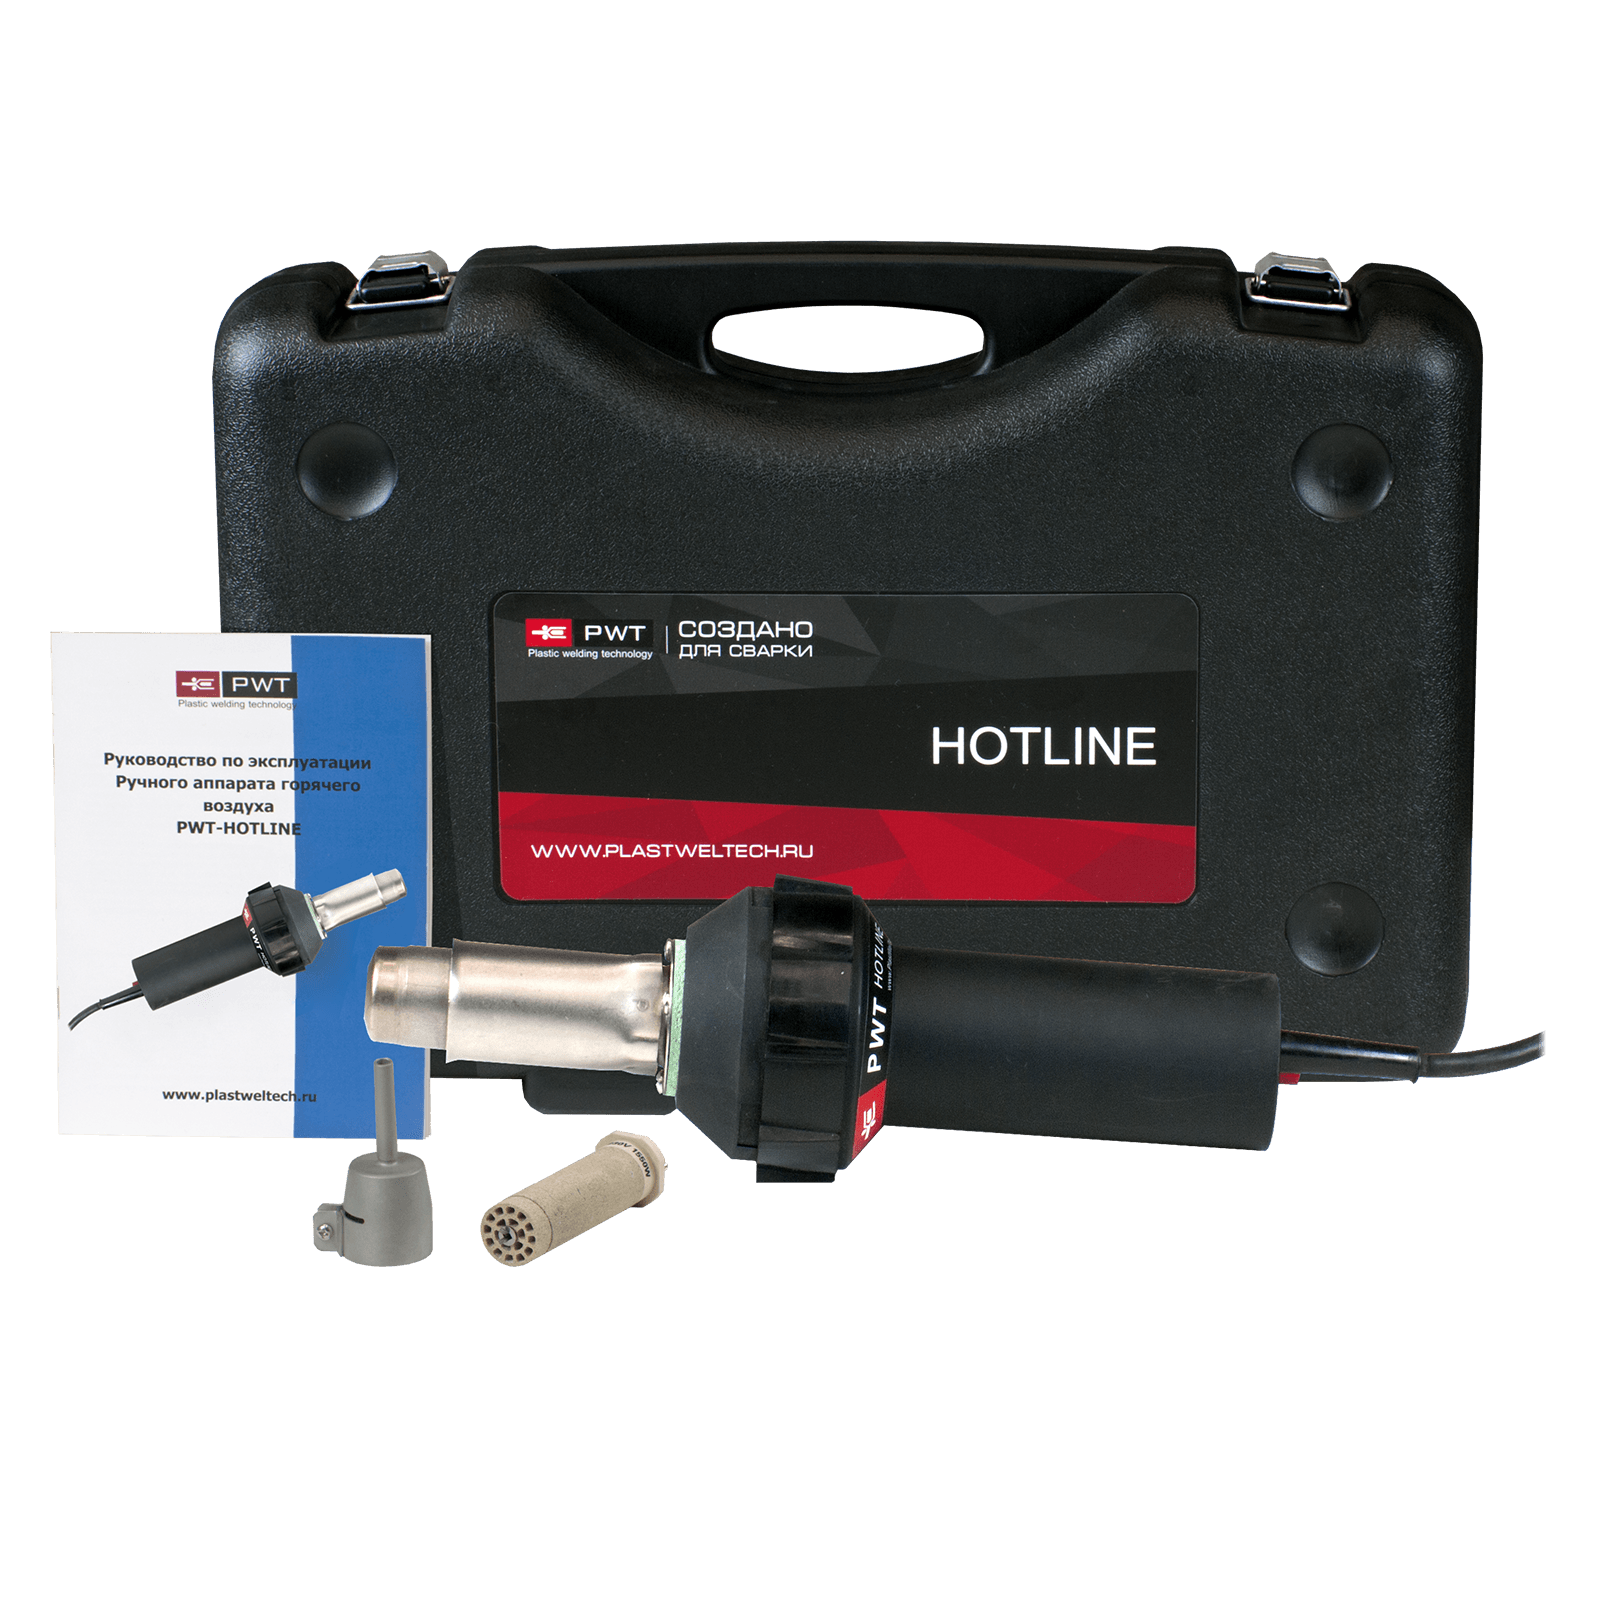 Комплект для сварки бамперов с строительным феном HOTLINE, стандартной насадкой 5 мм, транспортировочным кейсом